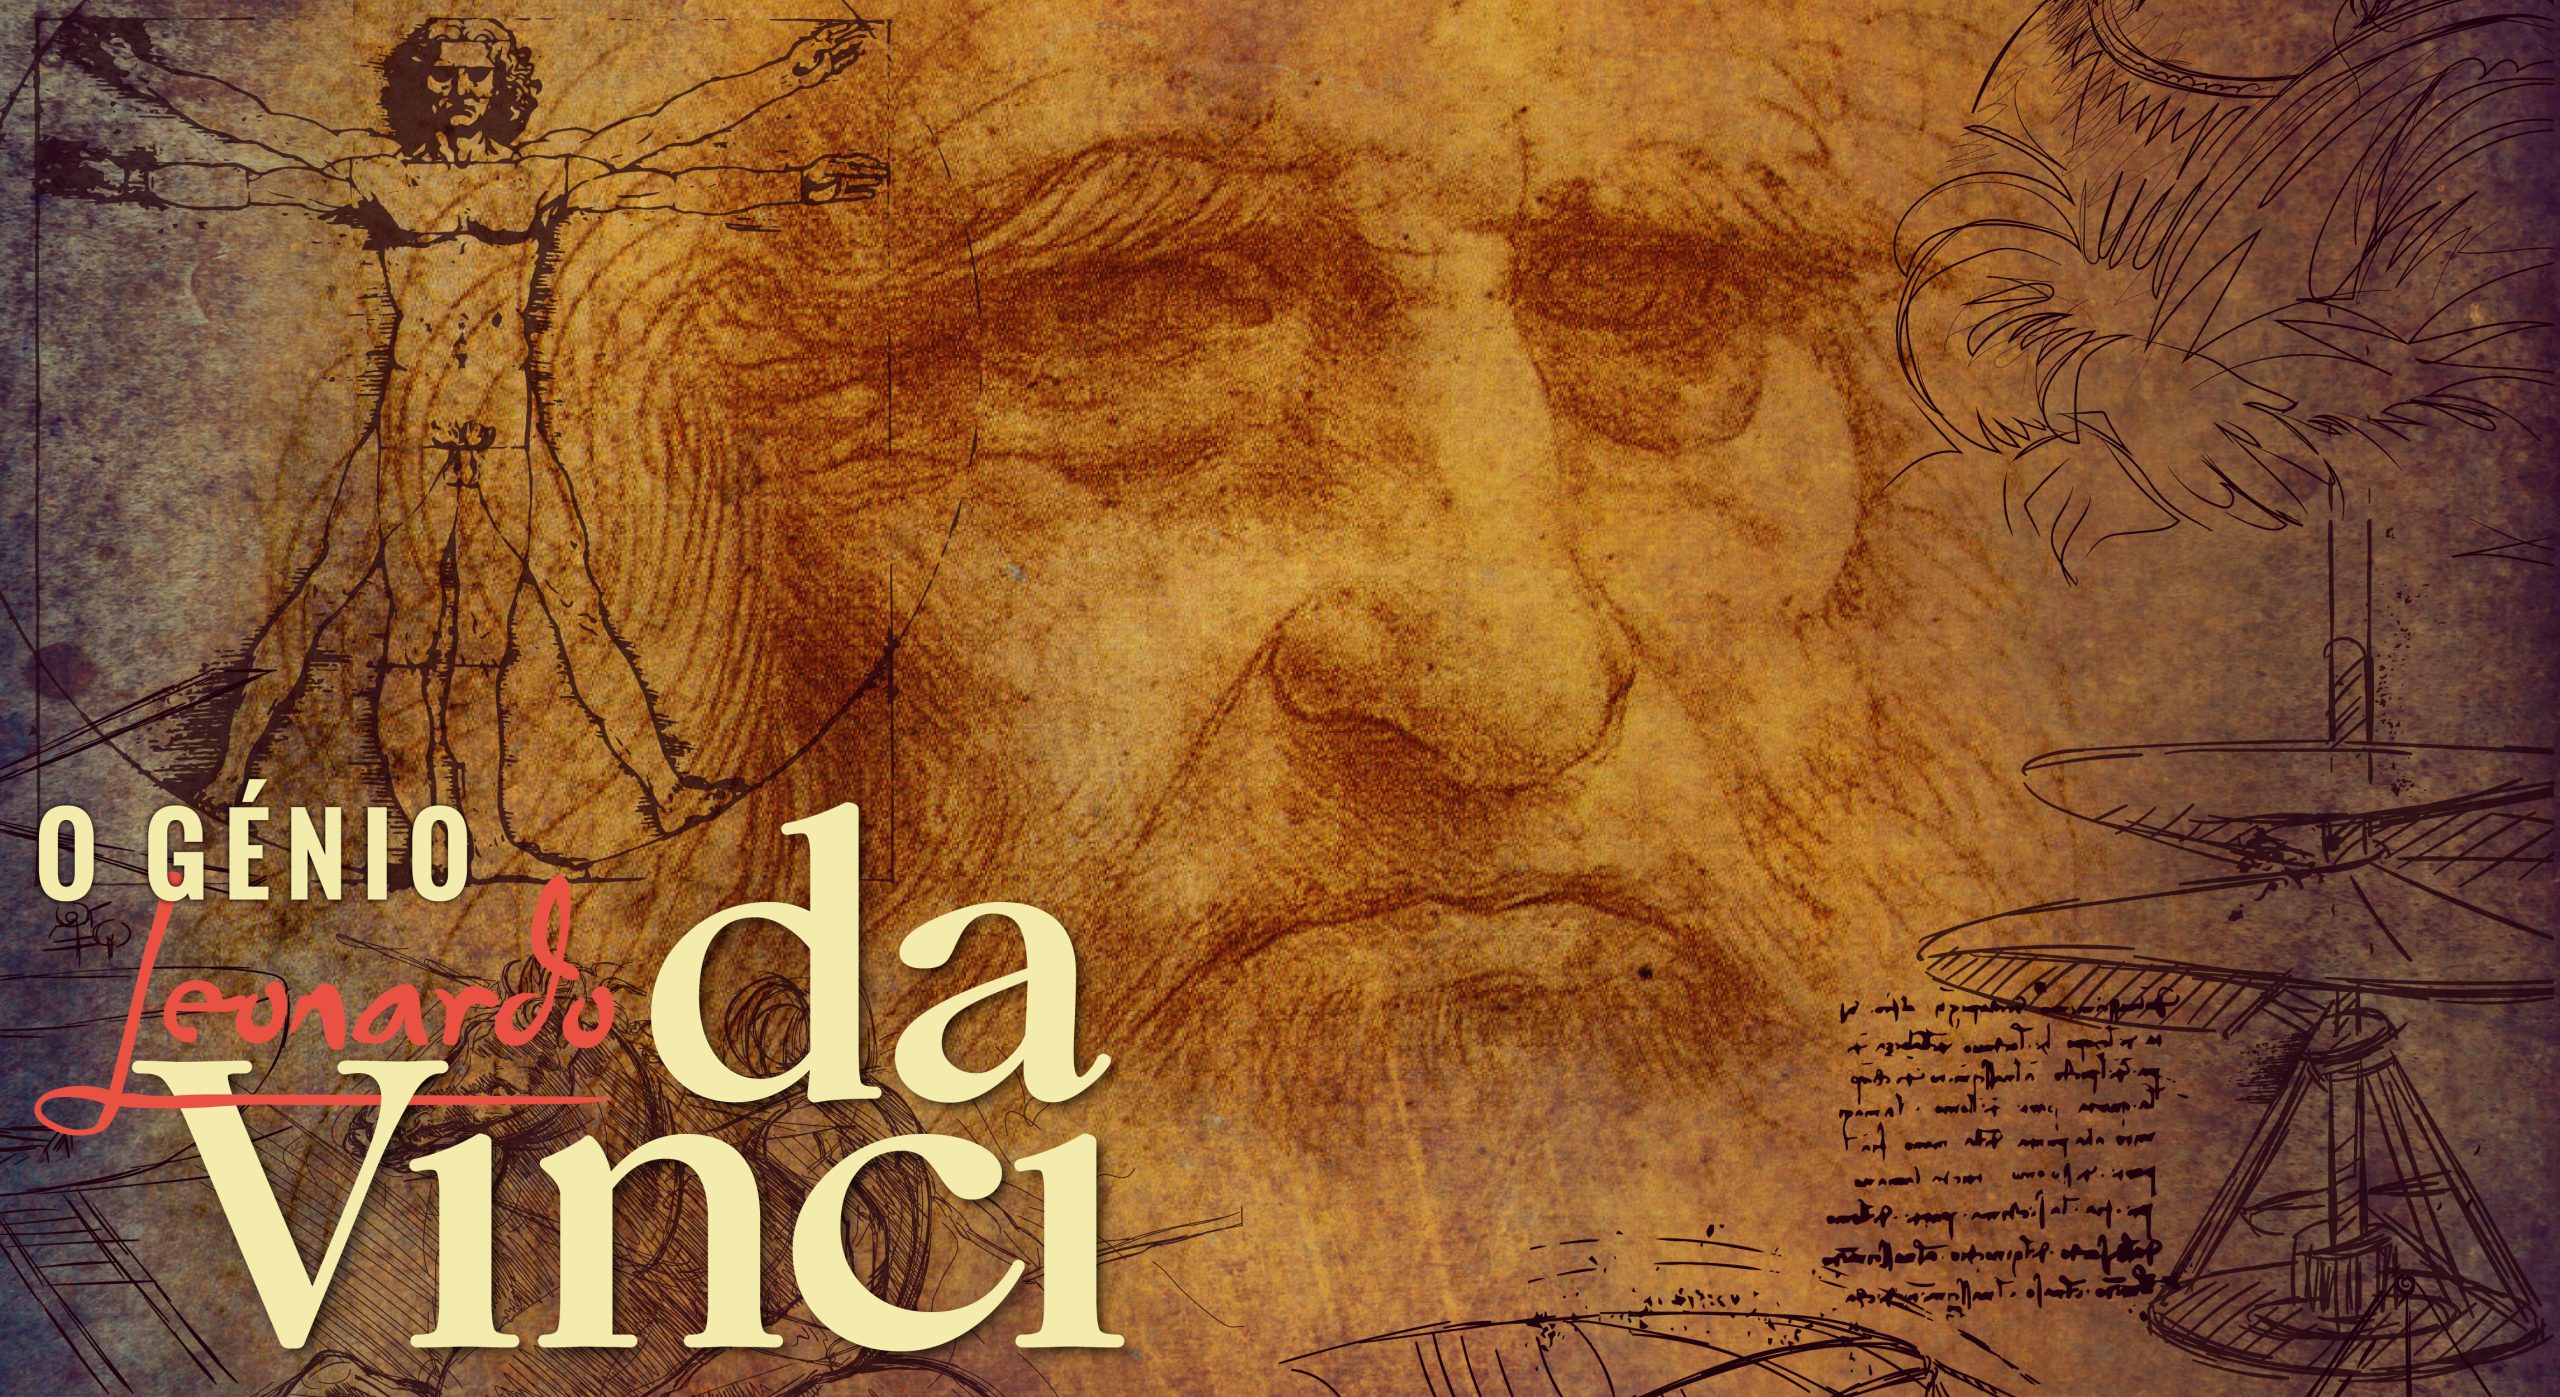 Leonardo Da Vinci – Exhibition